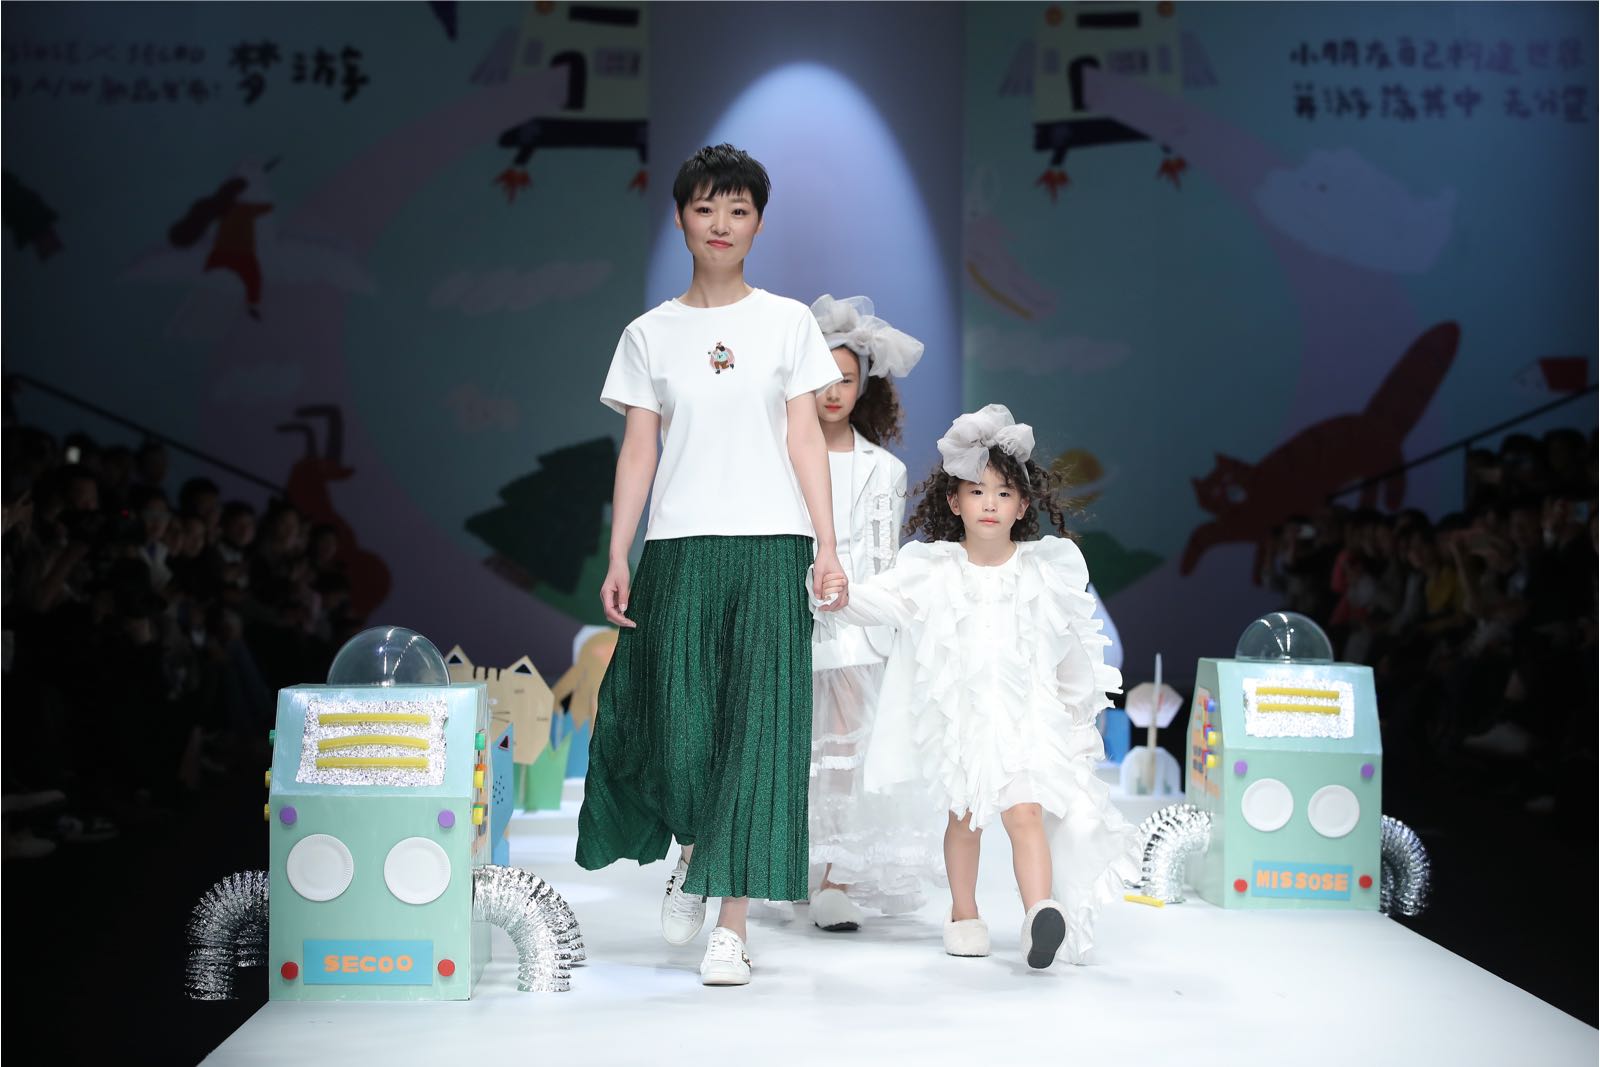 中国国际时装周 MISSOSE联合SECOO打造童真梦境